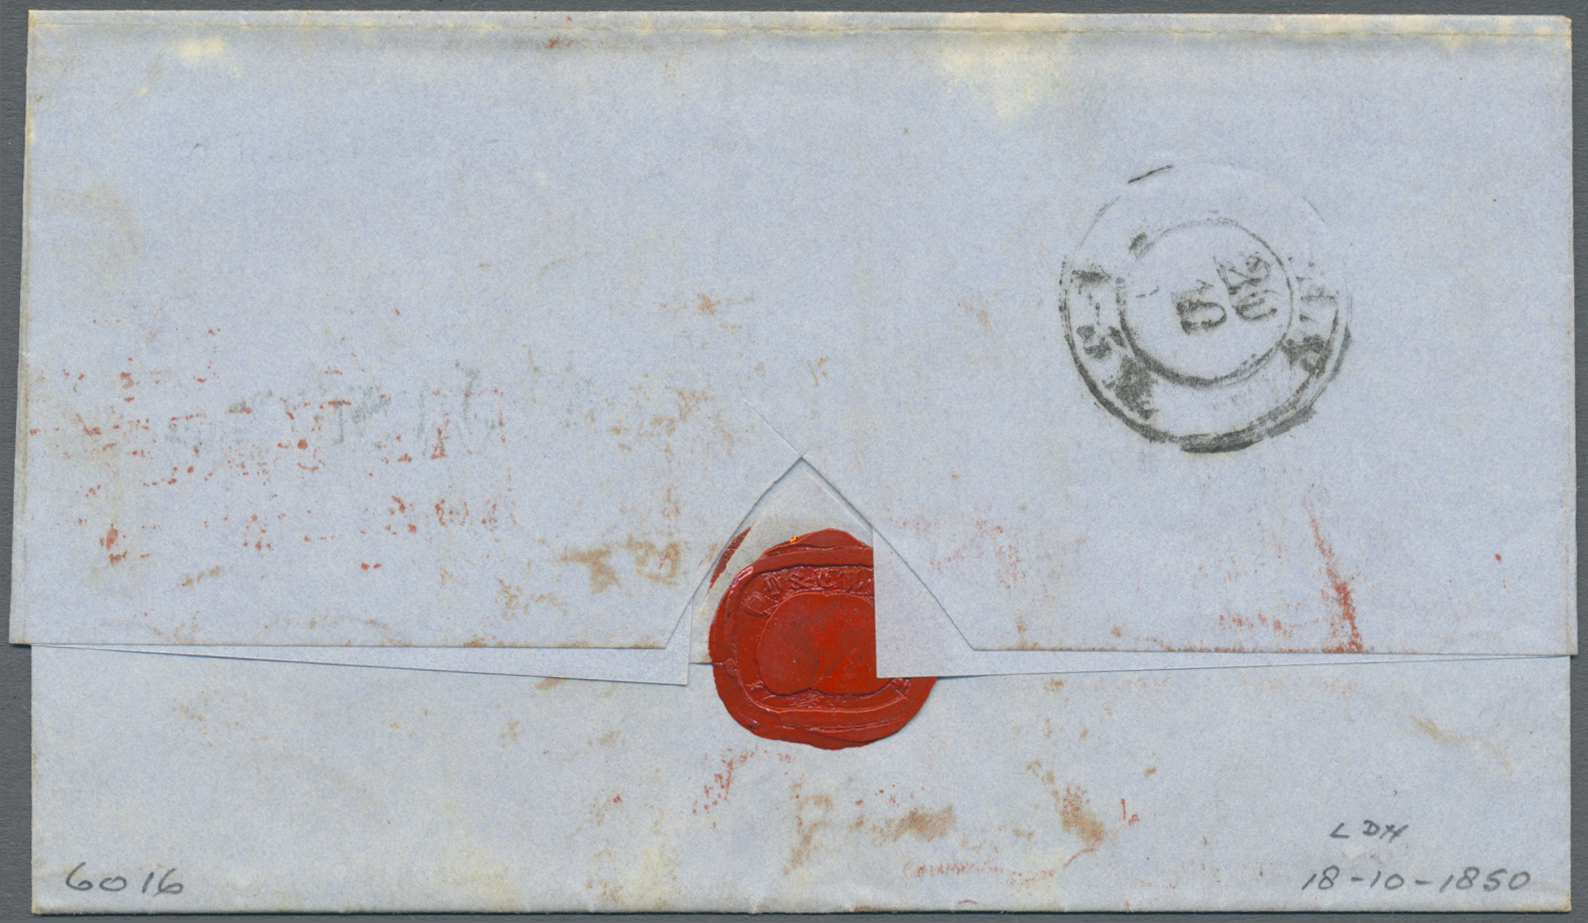 Br Großbritannien - Vorphilatelie: 1850, Taxed Letter From London "St. James St" To Colgne, Prussia Showing Trans - ...-1840 Préphilatélie